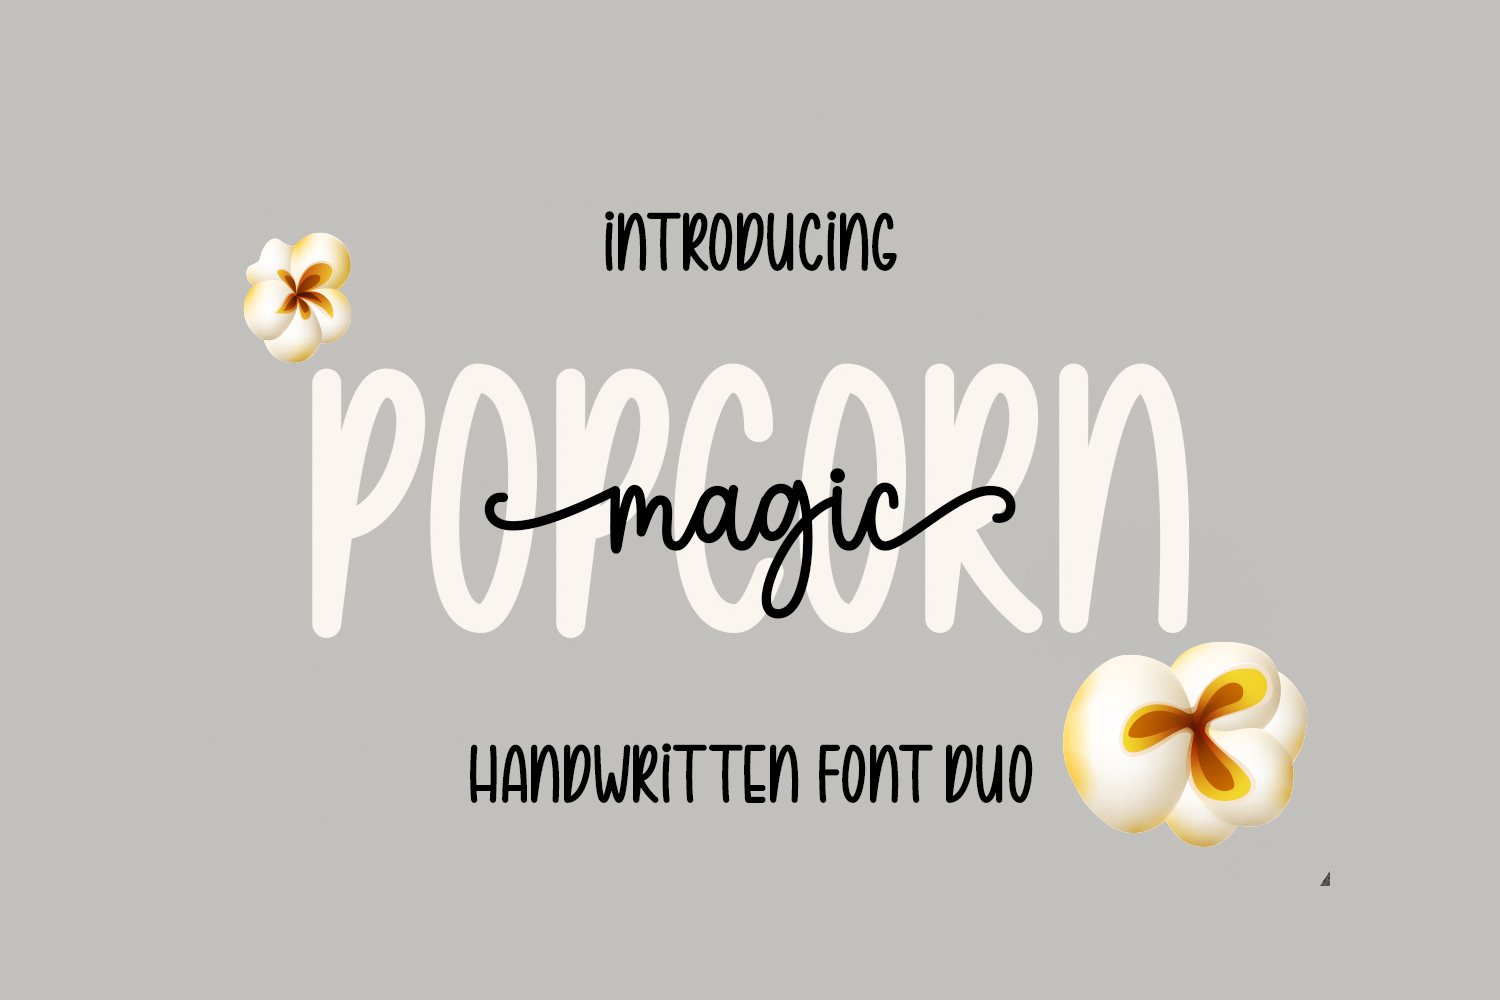 Popcorn Magic Free Font